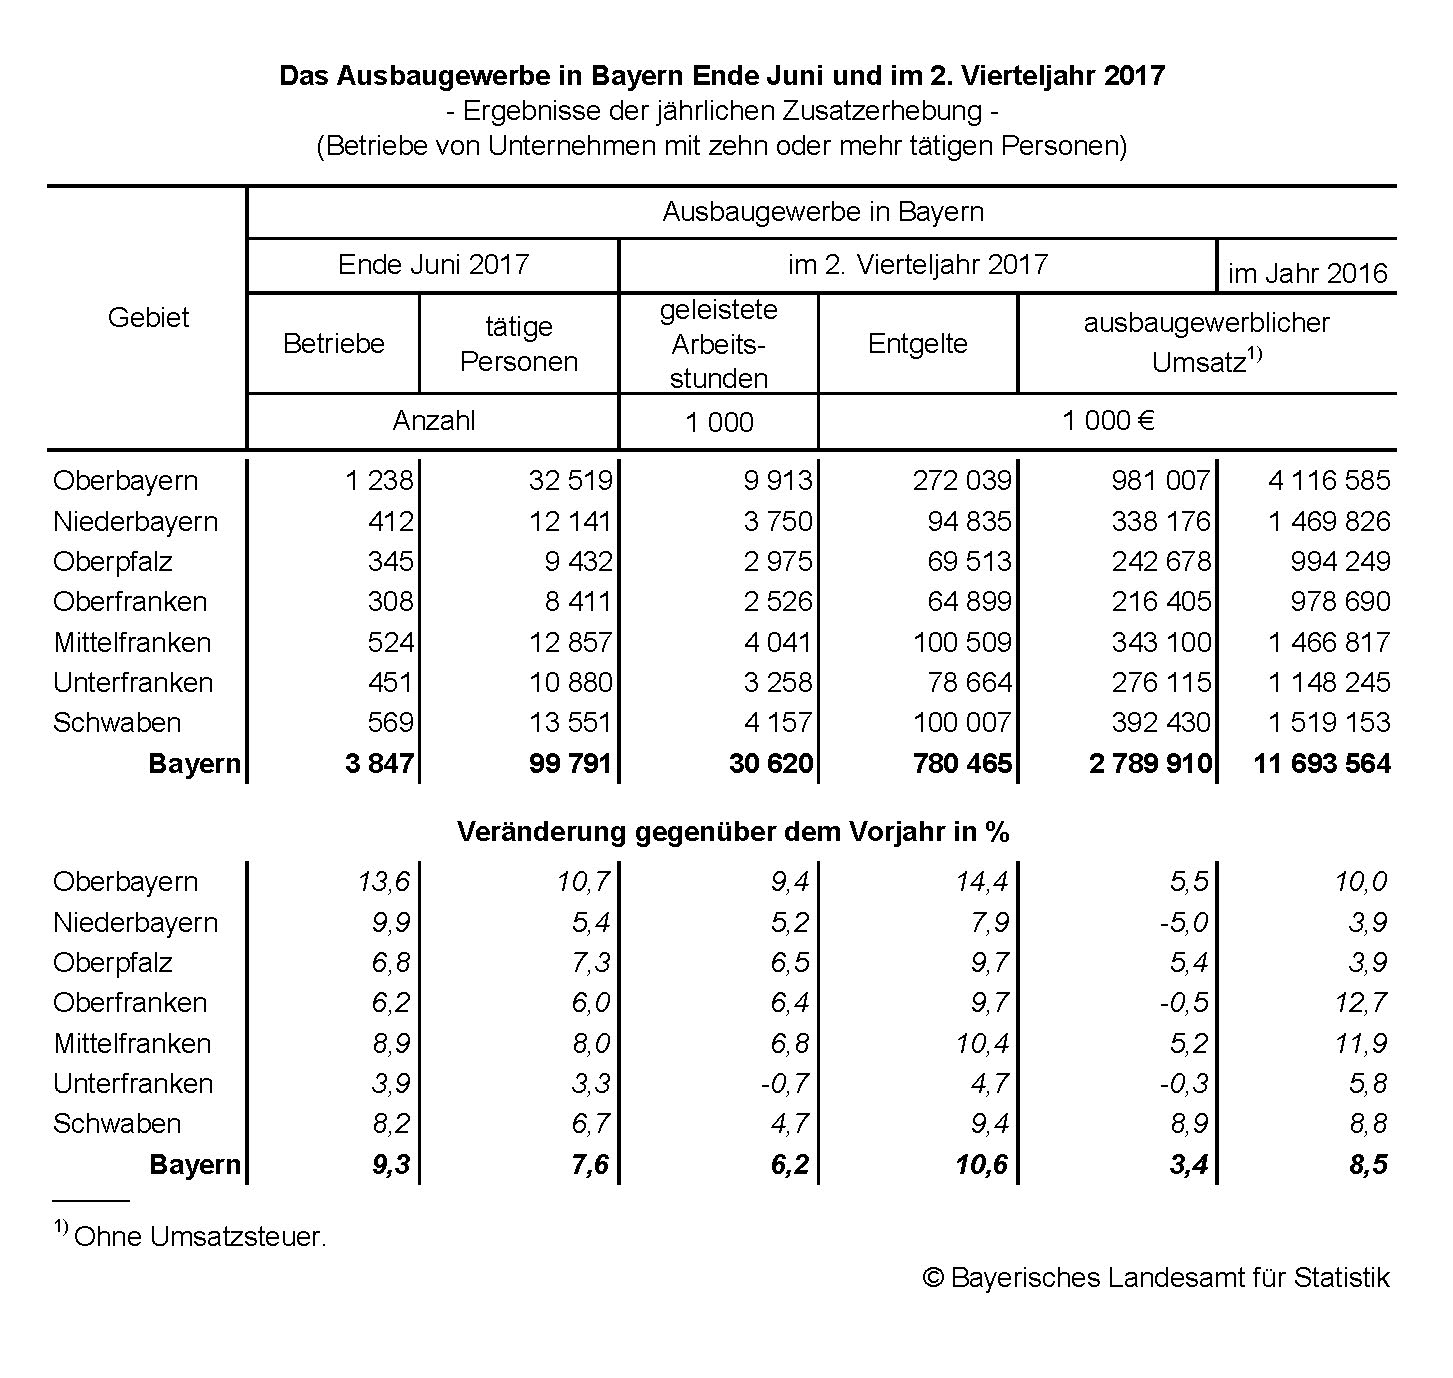 Das Ausbaugewerbe in Bayern Ende Juni und im zweiten viertel Jahr 2017